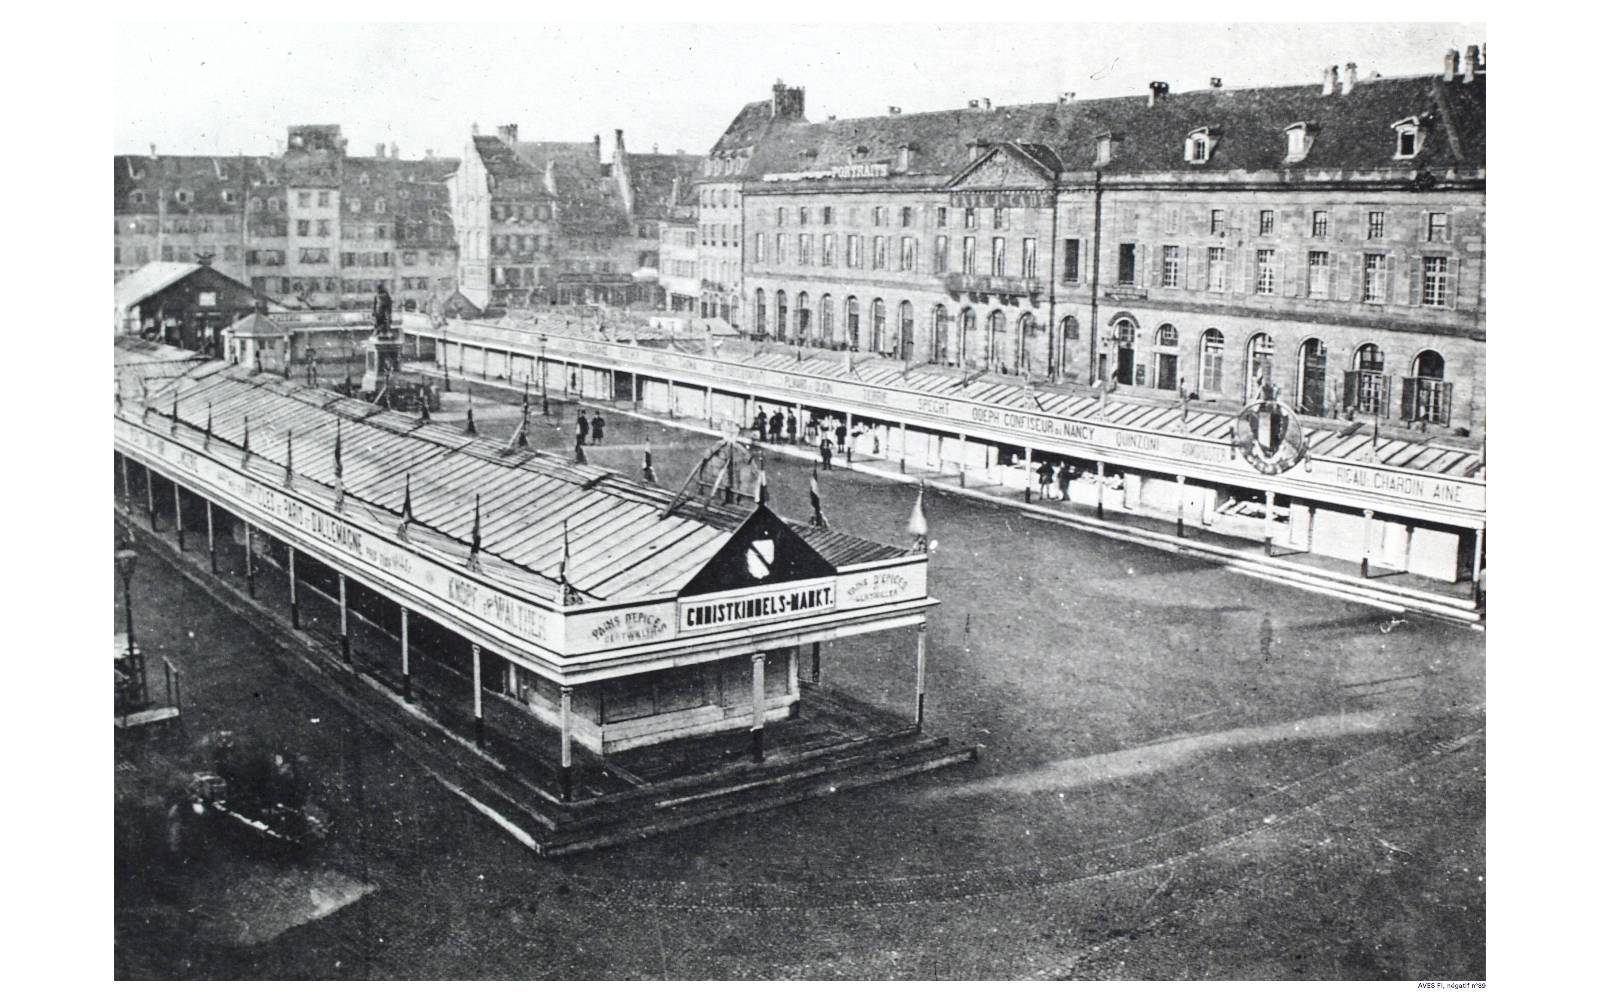 En 1863, le Christkindelsmärik s’installe Place Kléber